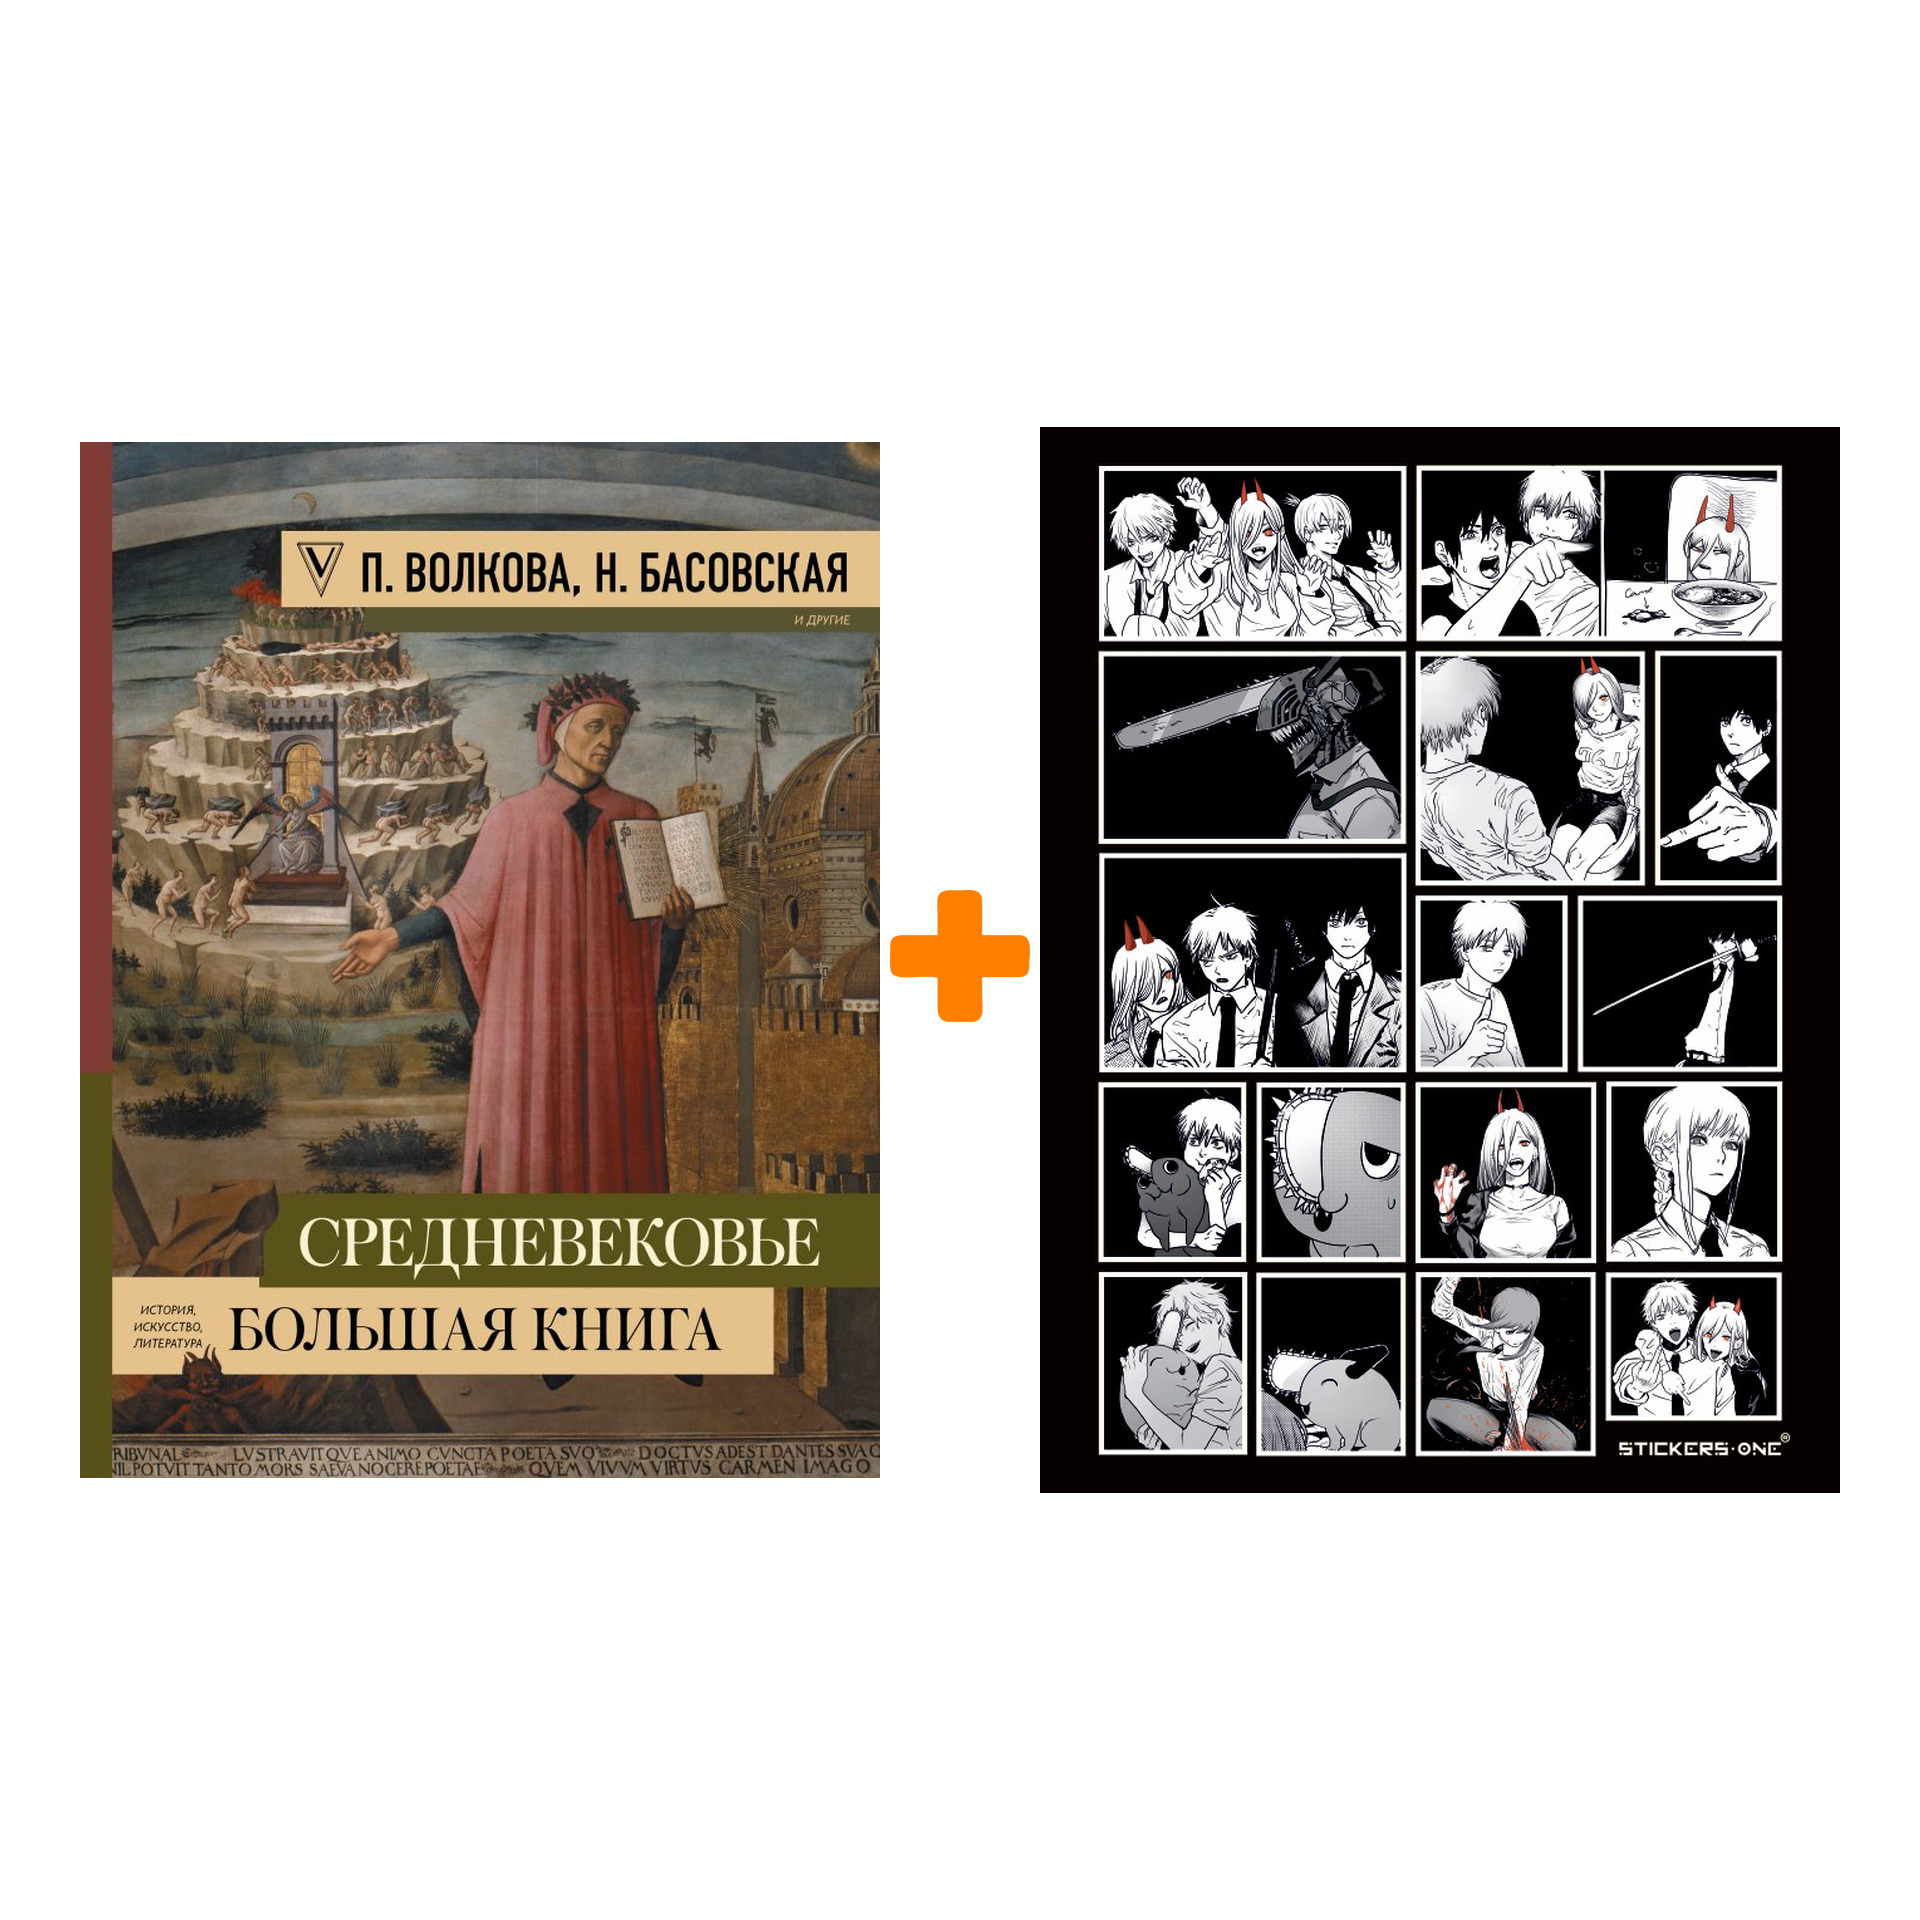 Набор Средневековье: большая книга истории, искусства, литературы + Стикерпак Chainsaw Man